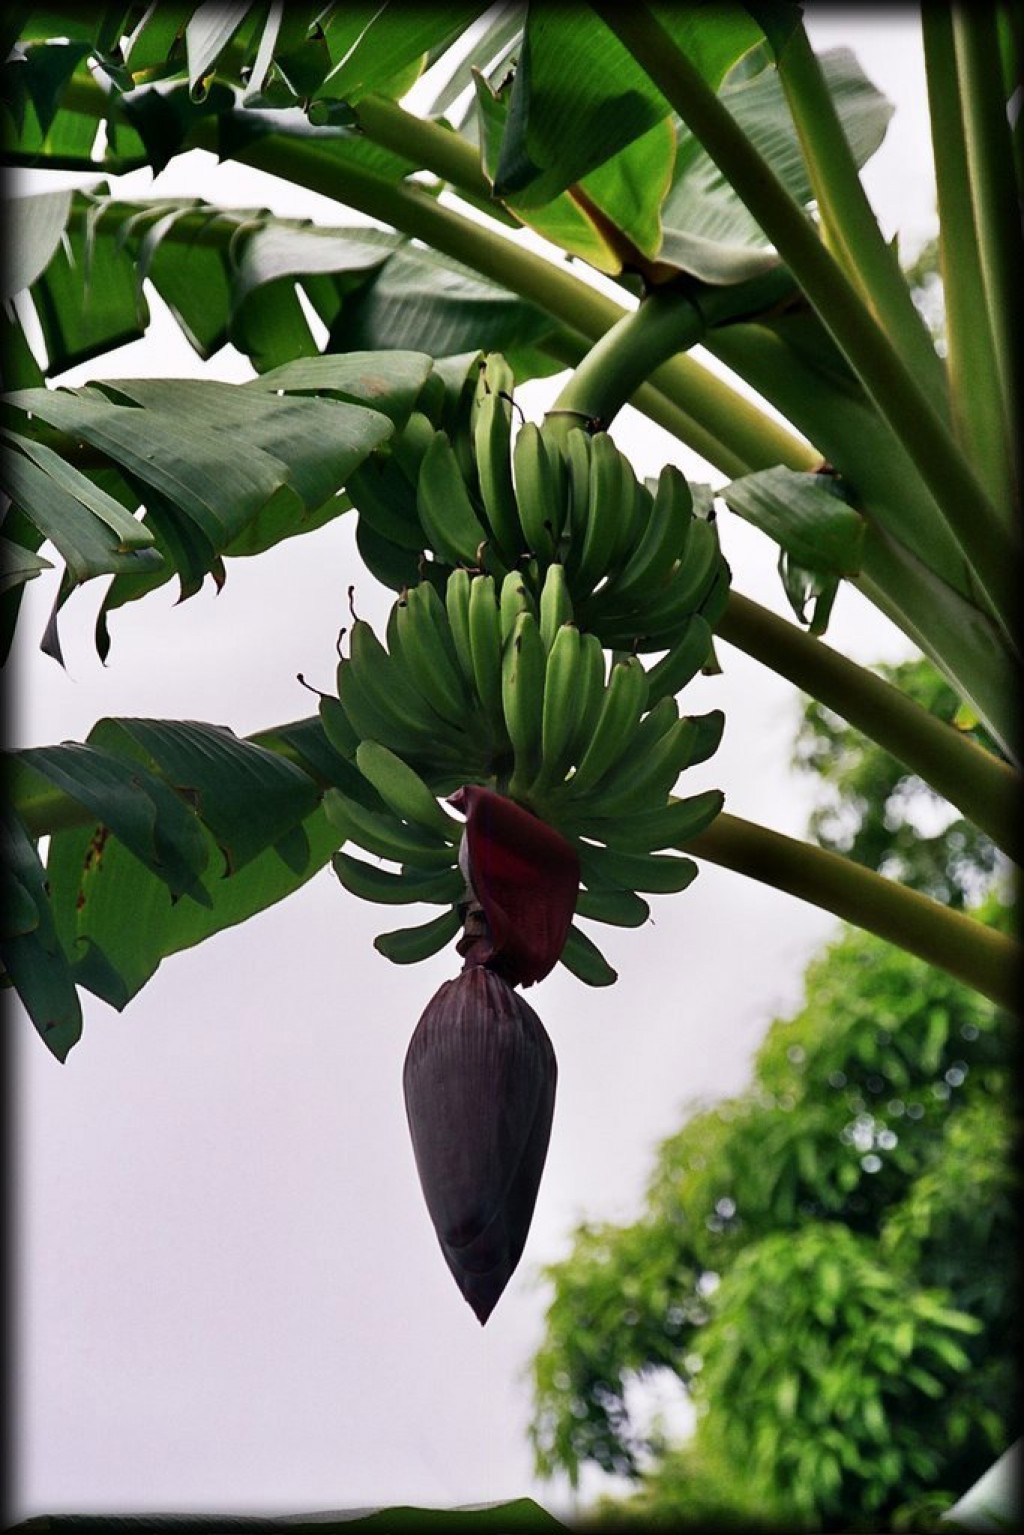 Banana tree.